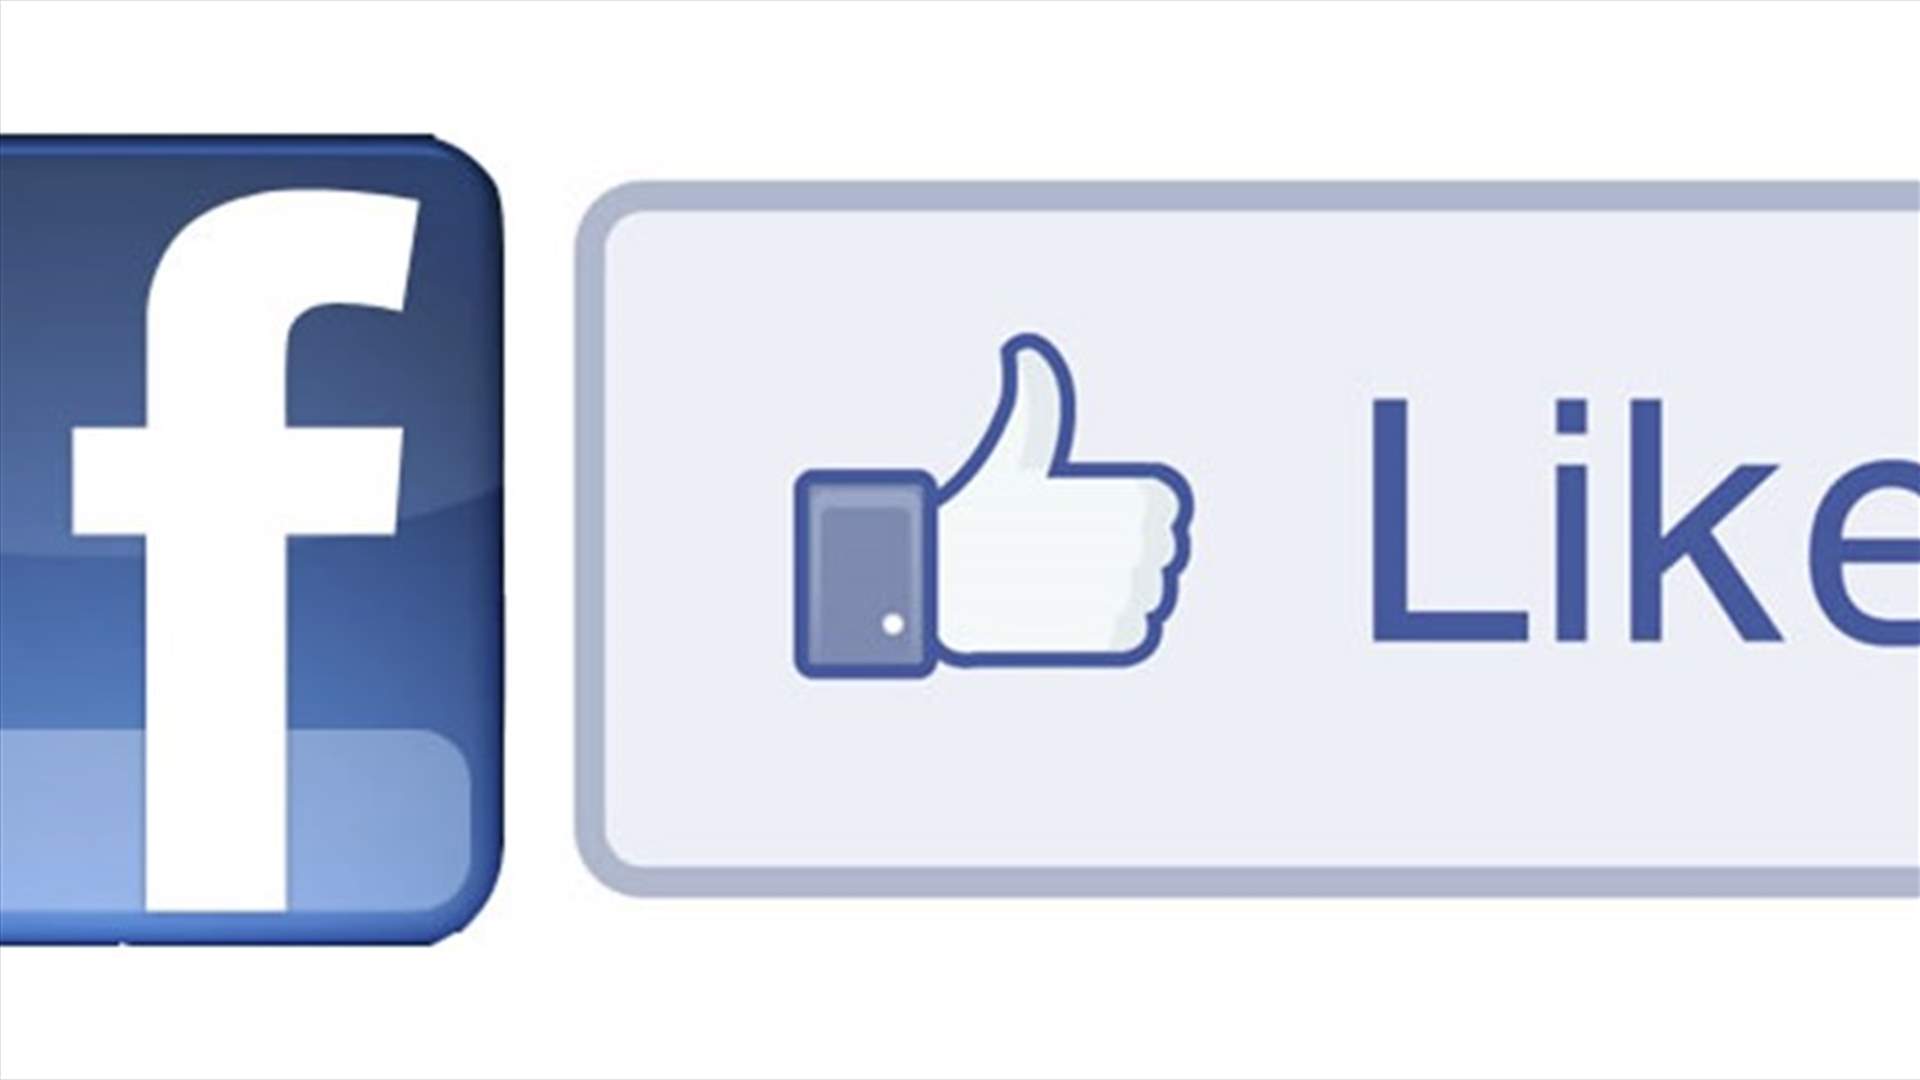 ميزة جديدة من فيسبوك لمستخدميه طال انتظارها... شكراً مارك زوكربيرغ!